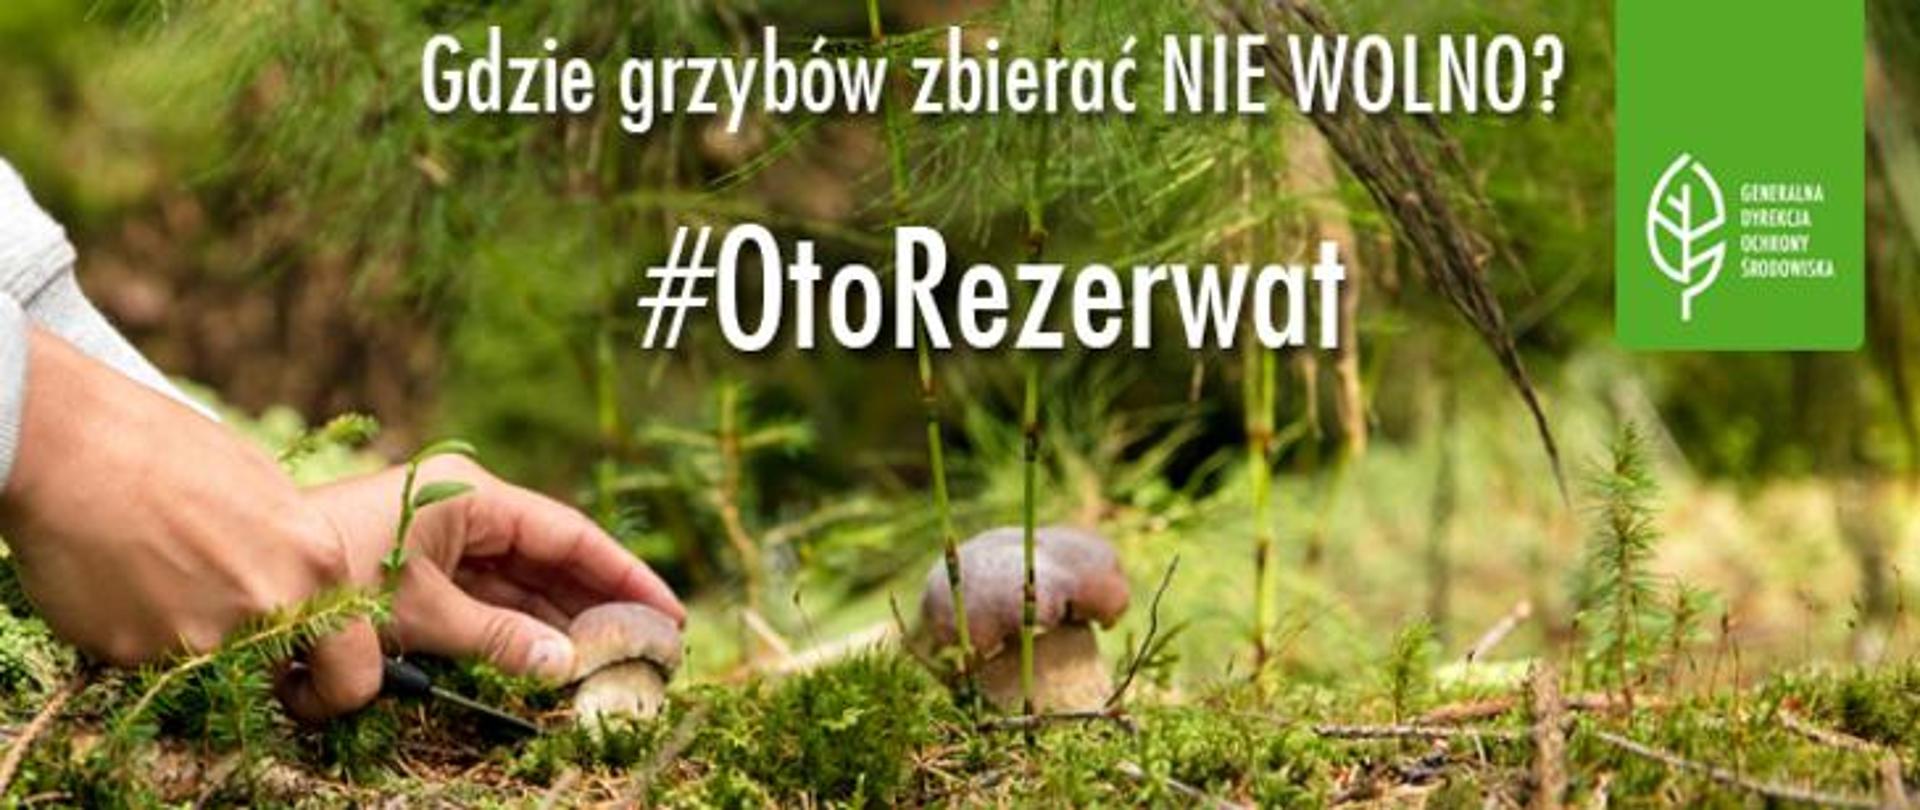 Ręce sięgające po grzyby i napis: Gdzie grzybów zbierać nie wolno? #OtoRezerwat